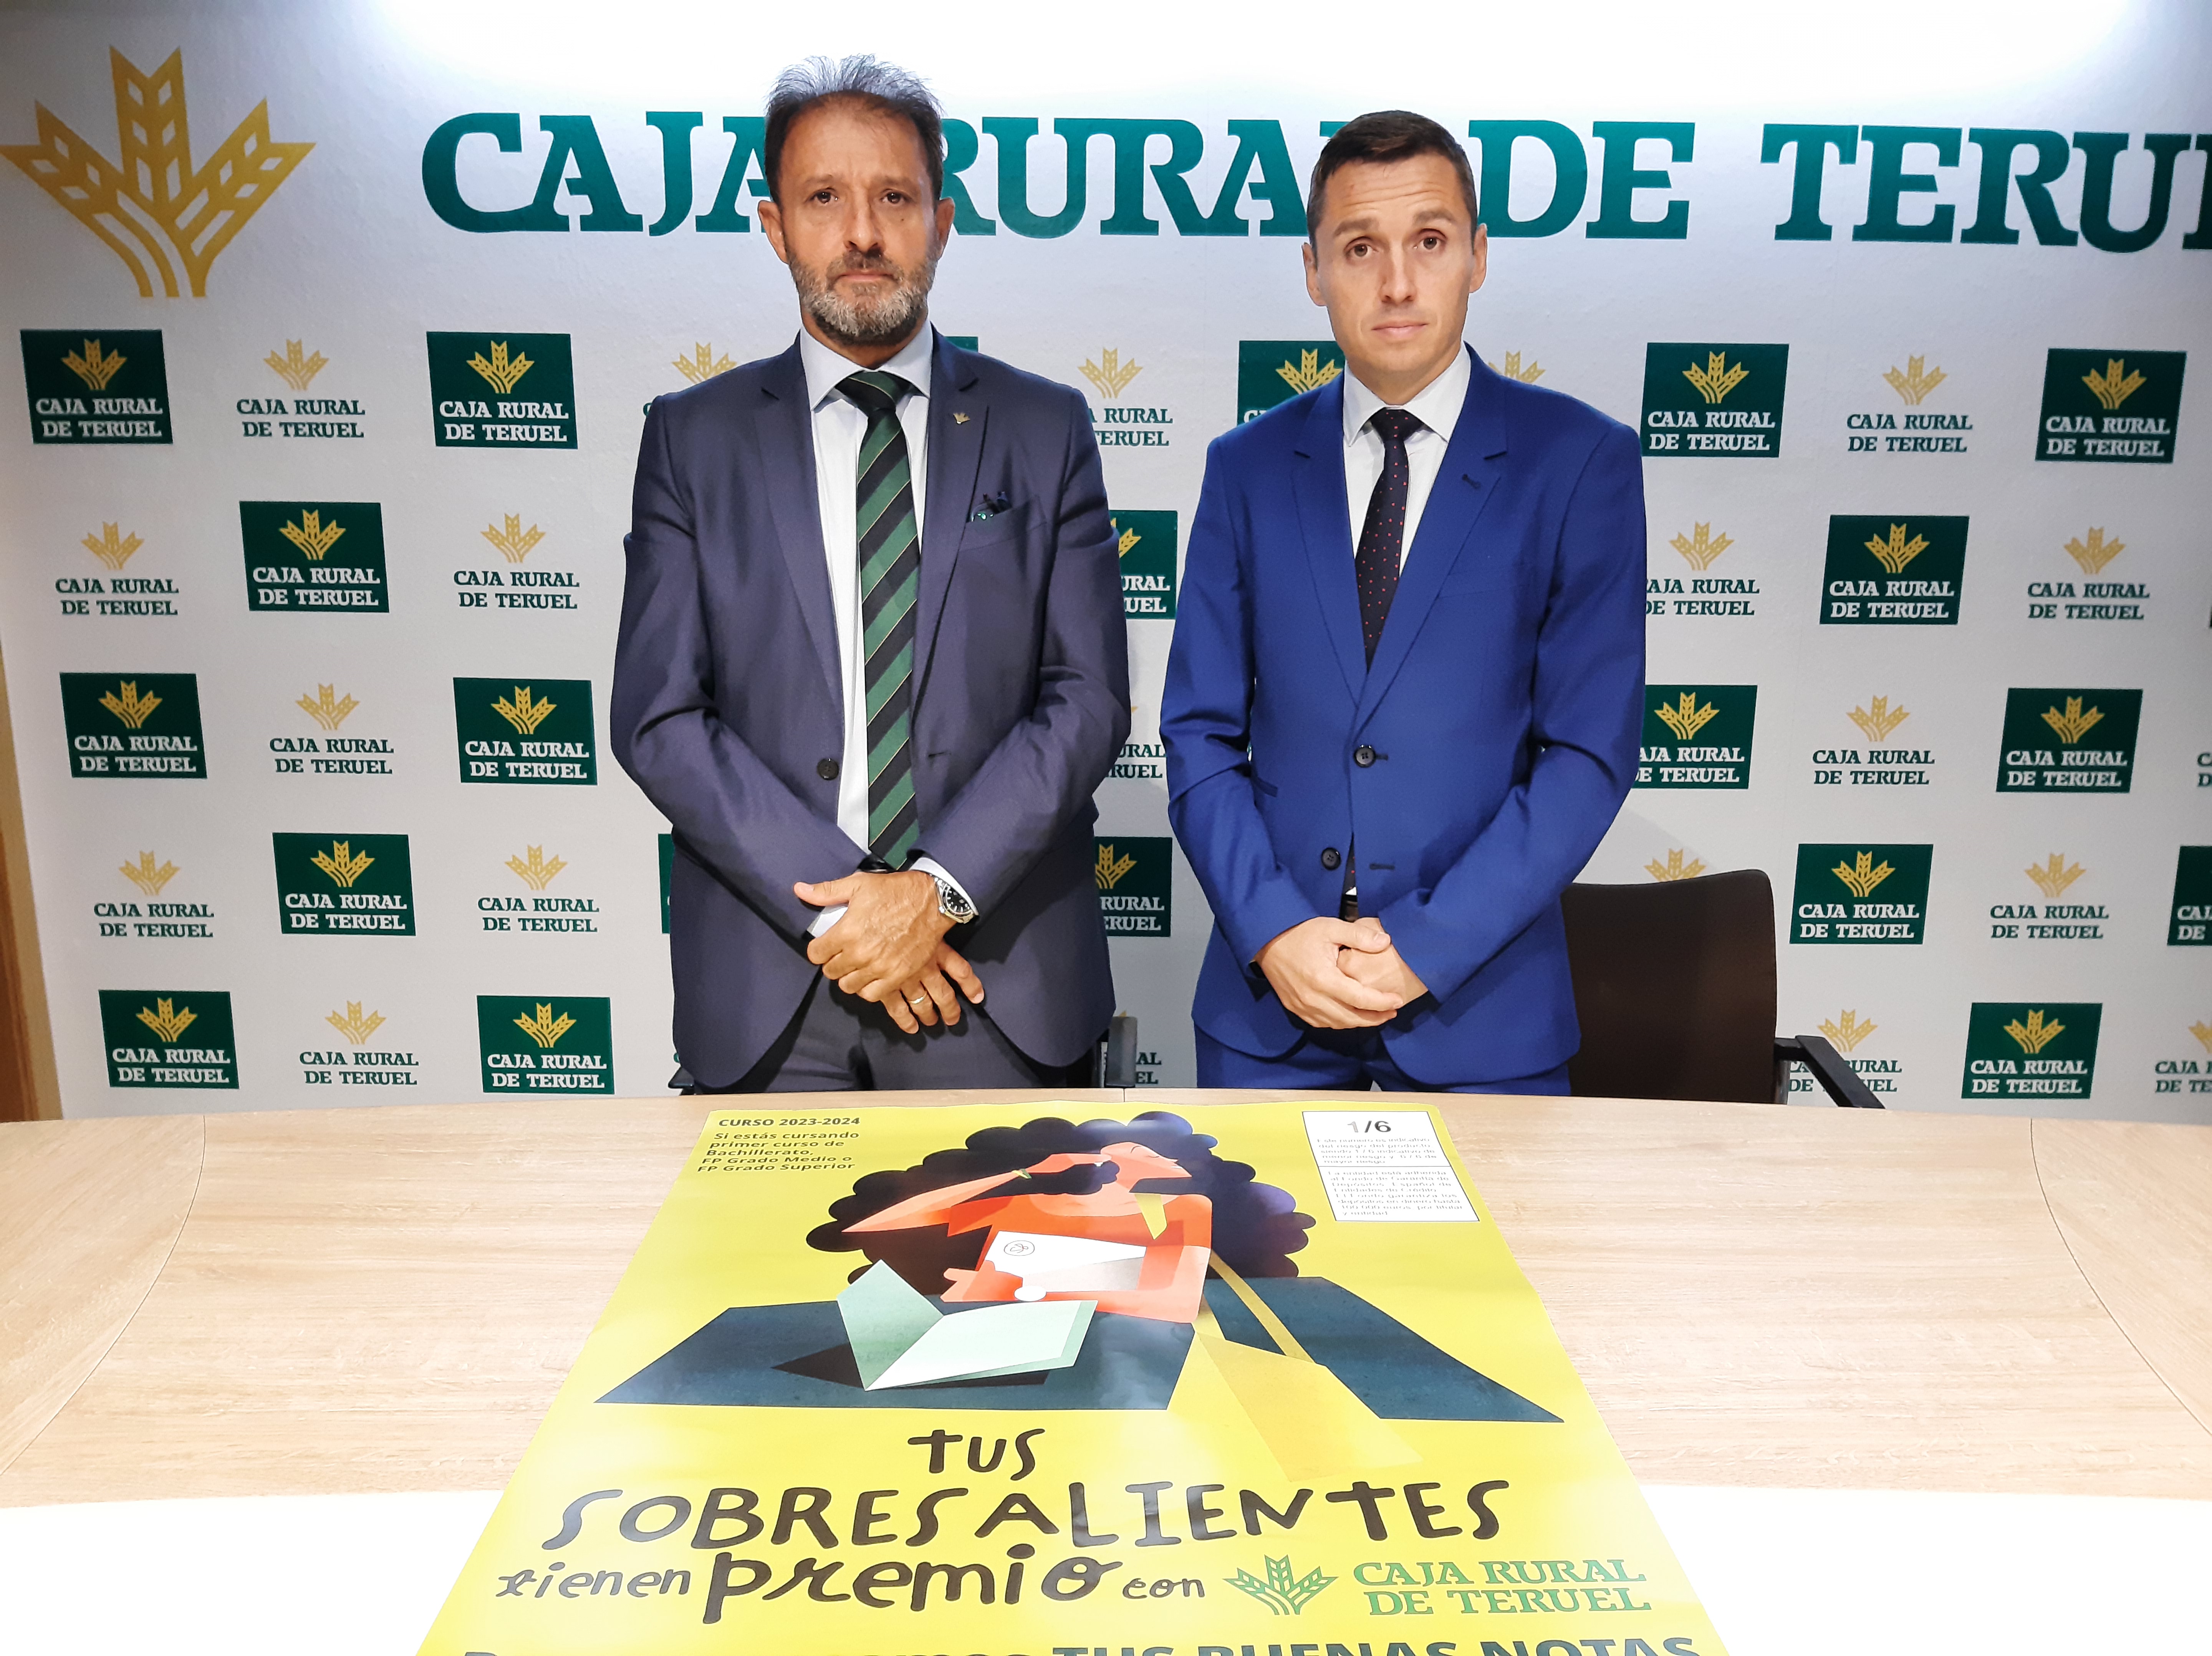 Caja Rural de Teruel recompensará con hasta 250 euros los sobresalientes obtenidos por los alumnos turolenses de primer curso de Bachillerato y Formación Profesional